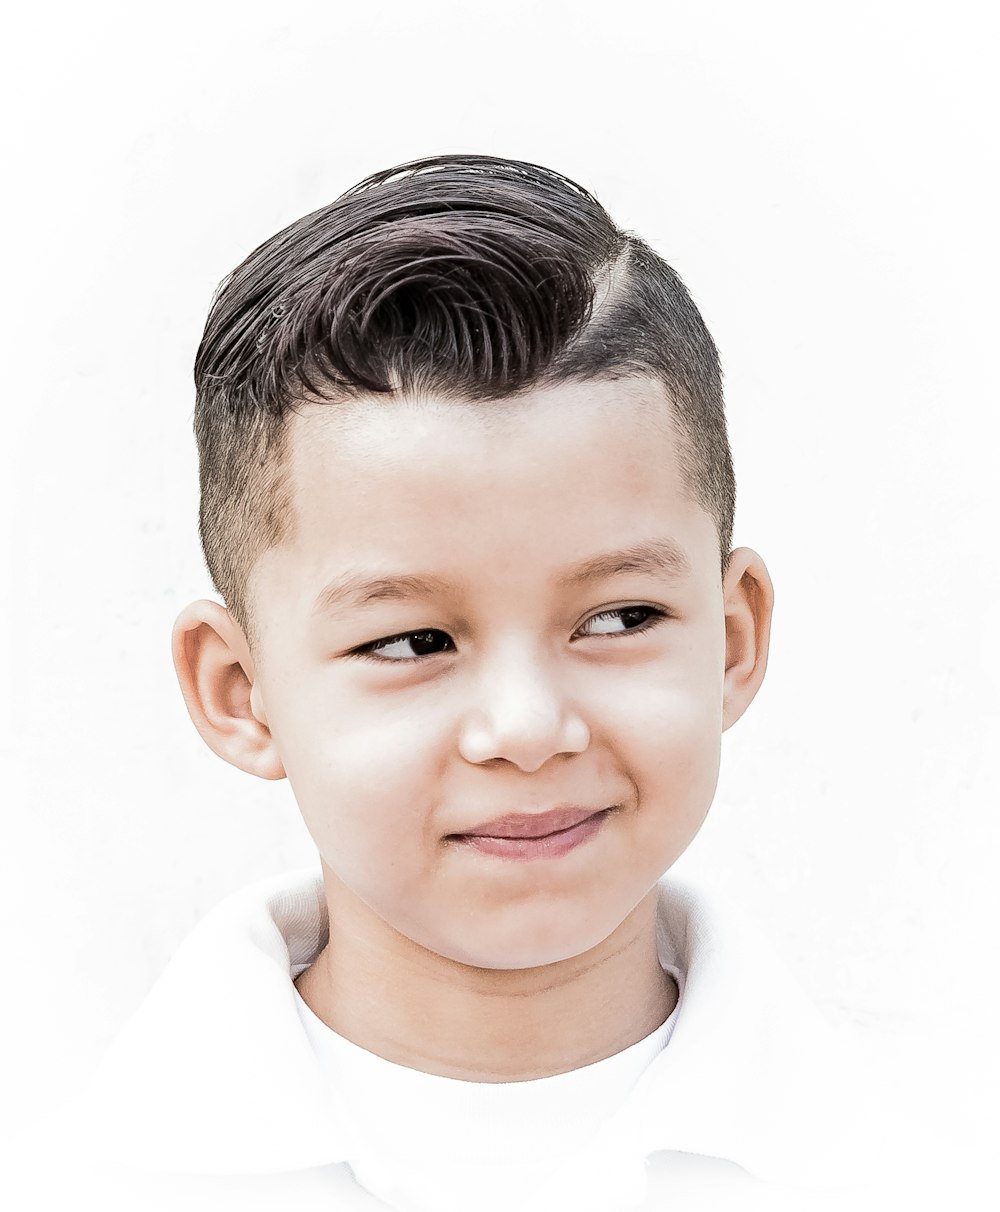 Un niño con un corte de pelo corto y una camisa blanca